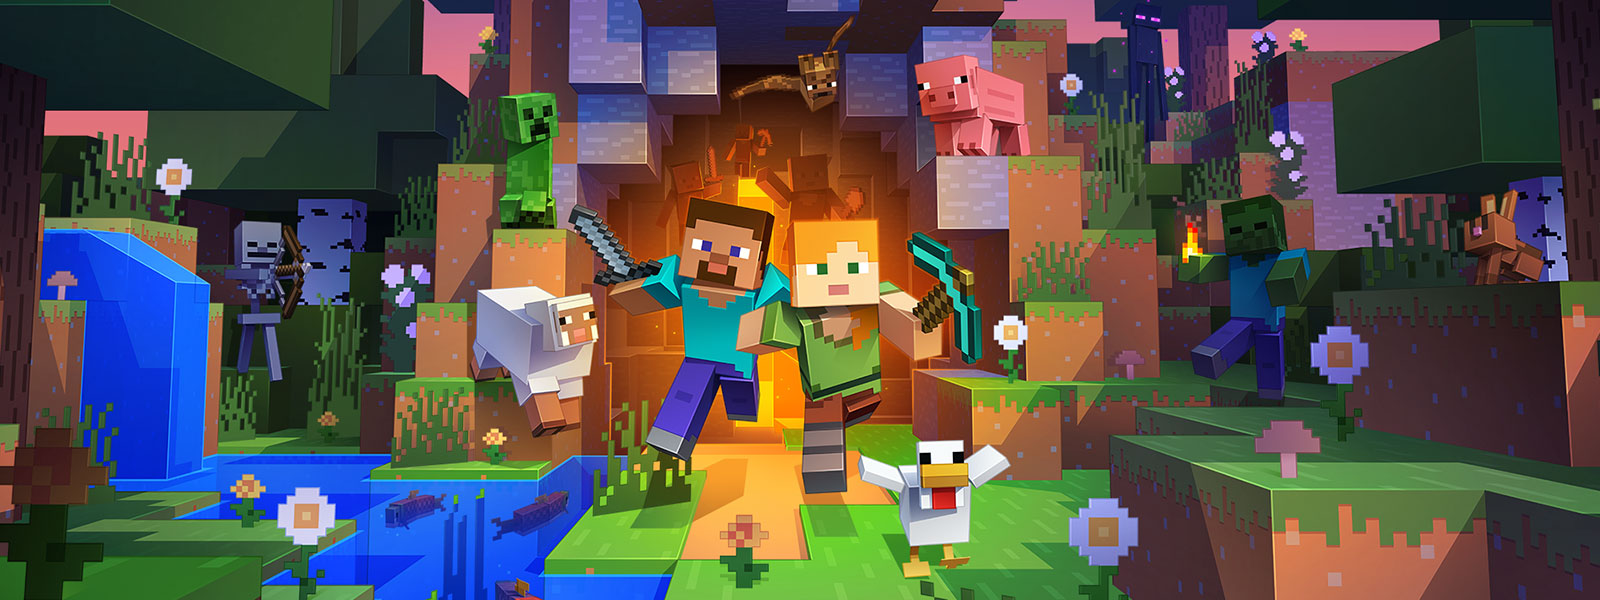 Dos personajes saliendo de un túnel con muchas criaturas del mundo de Minecraft